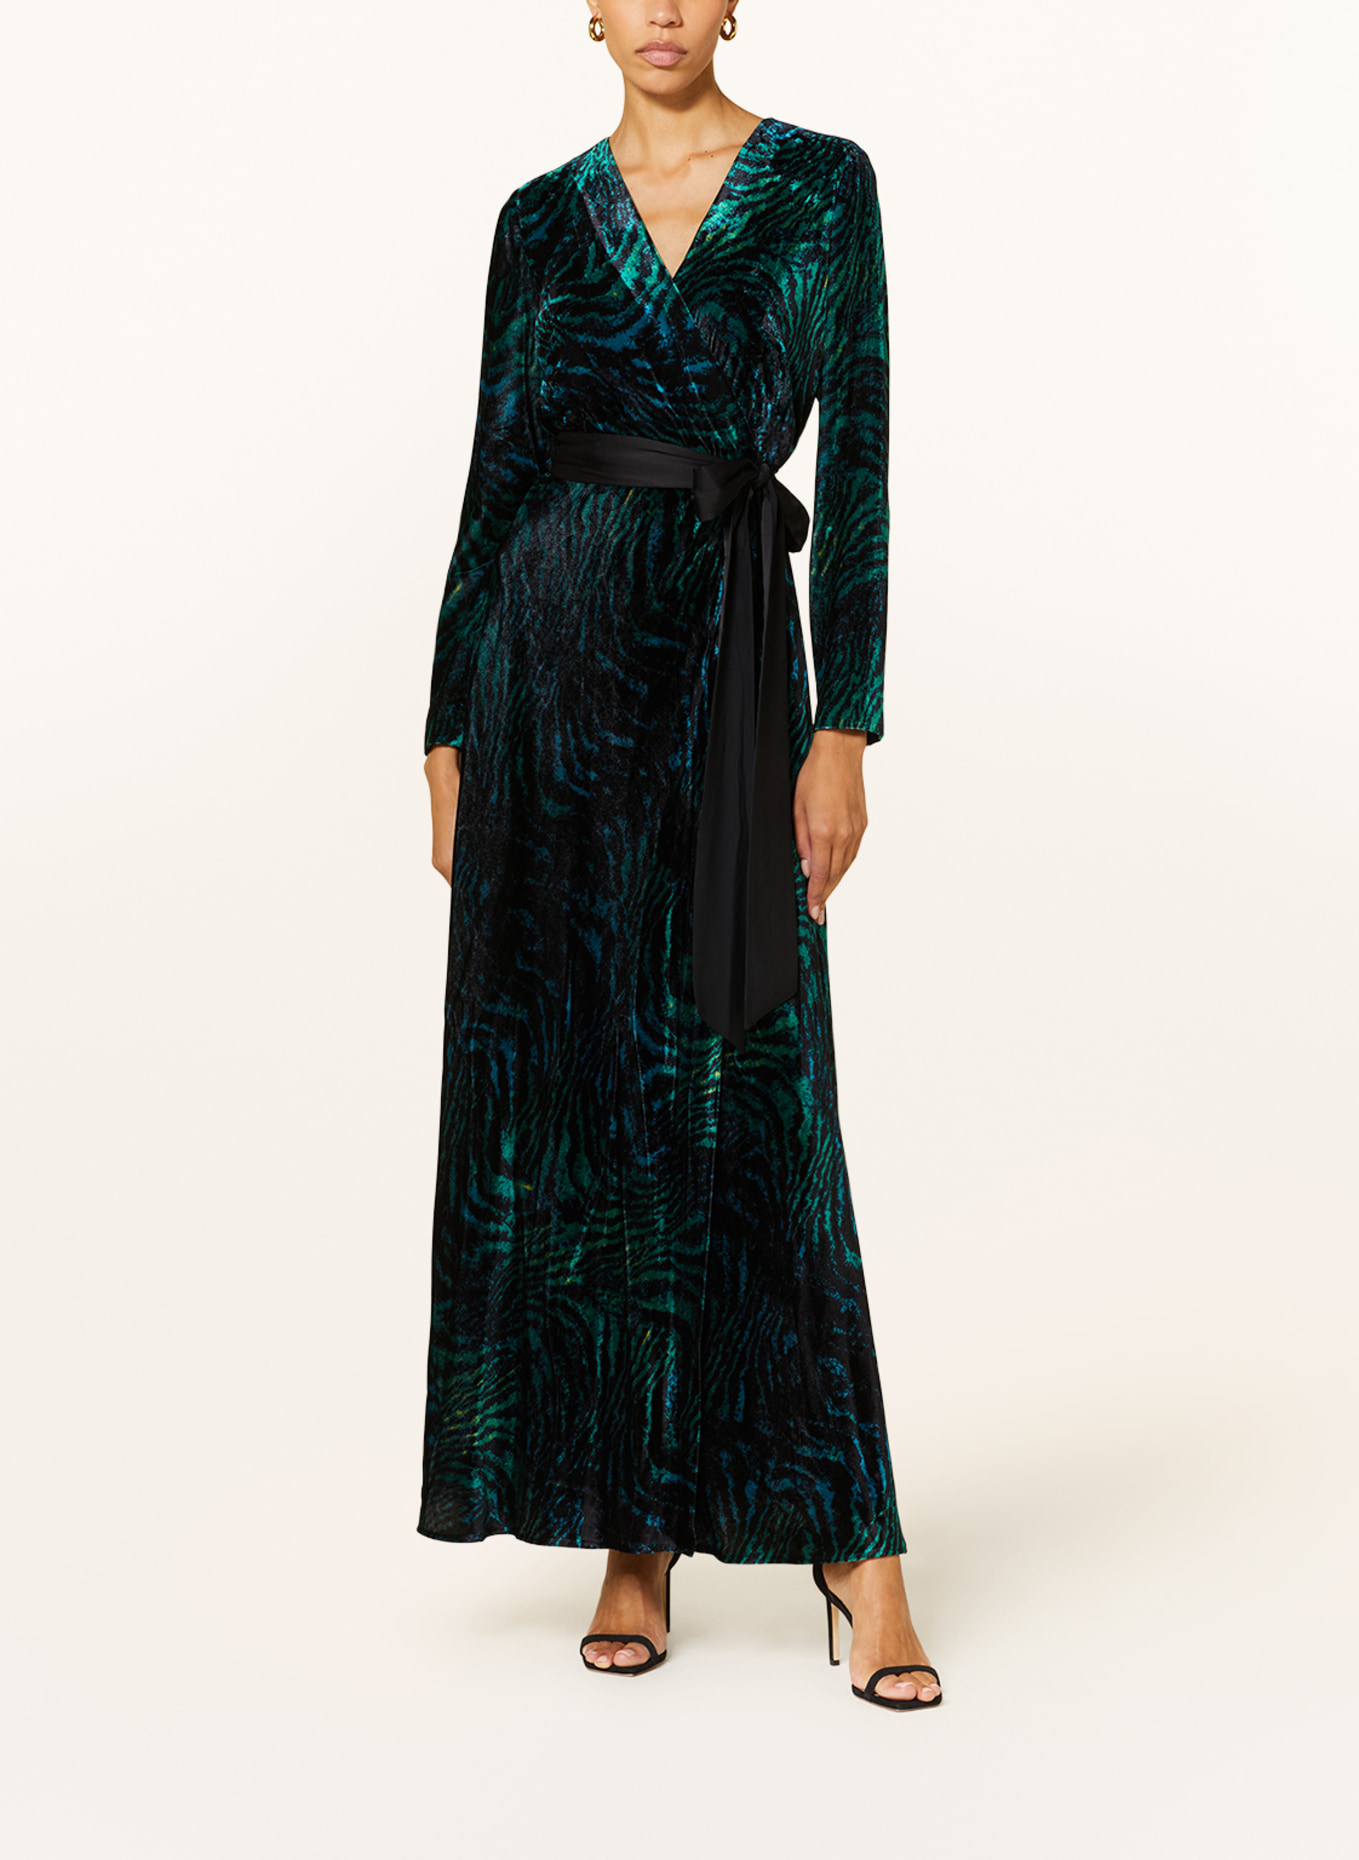 DIANE VON FURSTENBERG Wrap dress JARETH in velvet, Color: TEAL/ BLACK/ BLUE (Image 2)